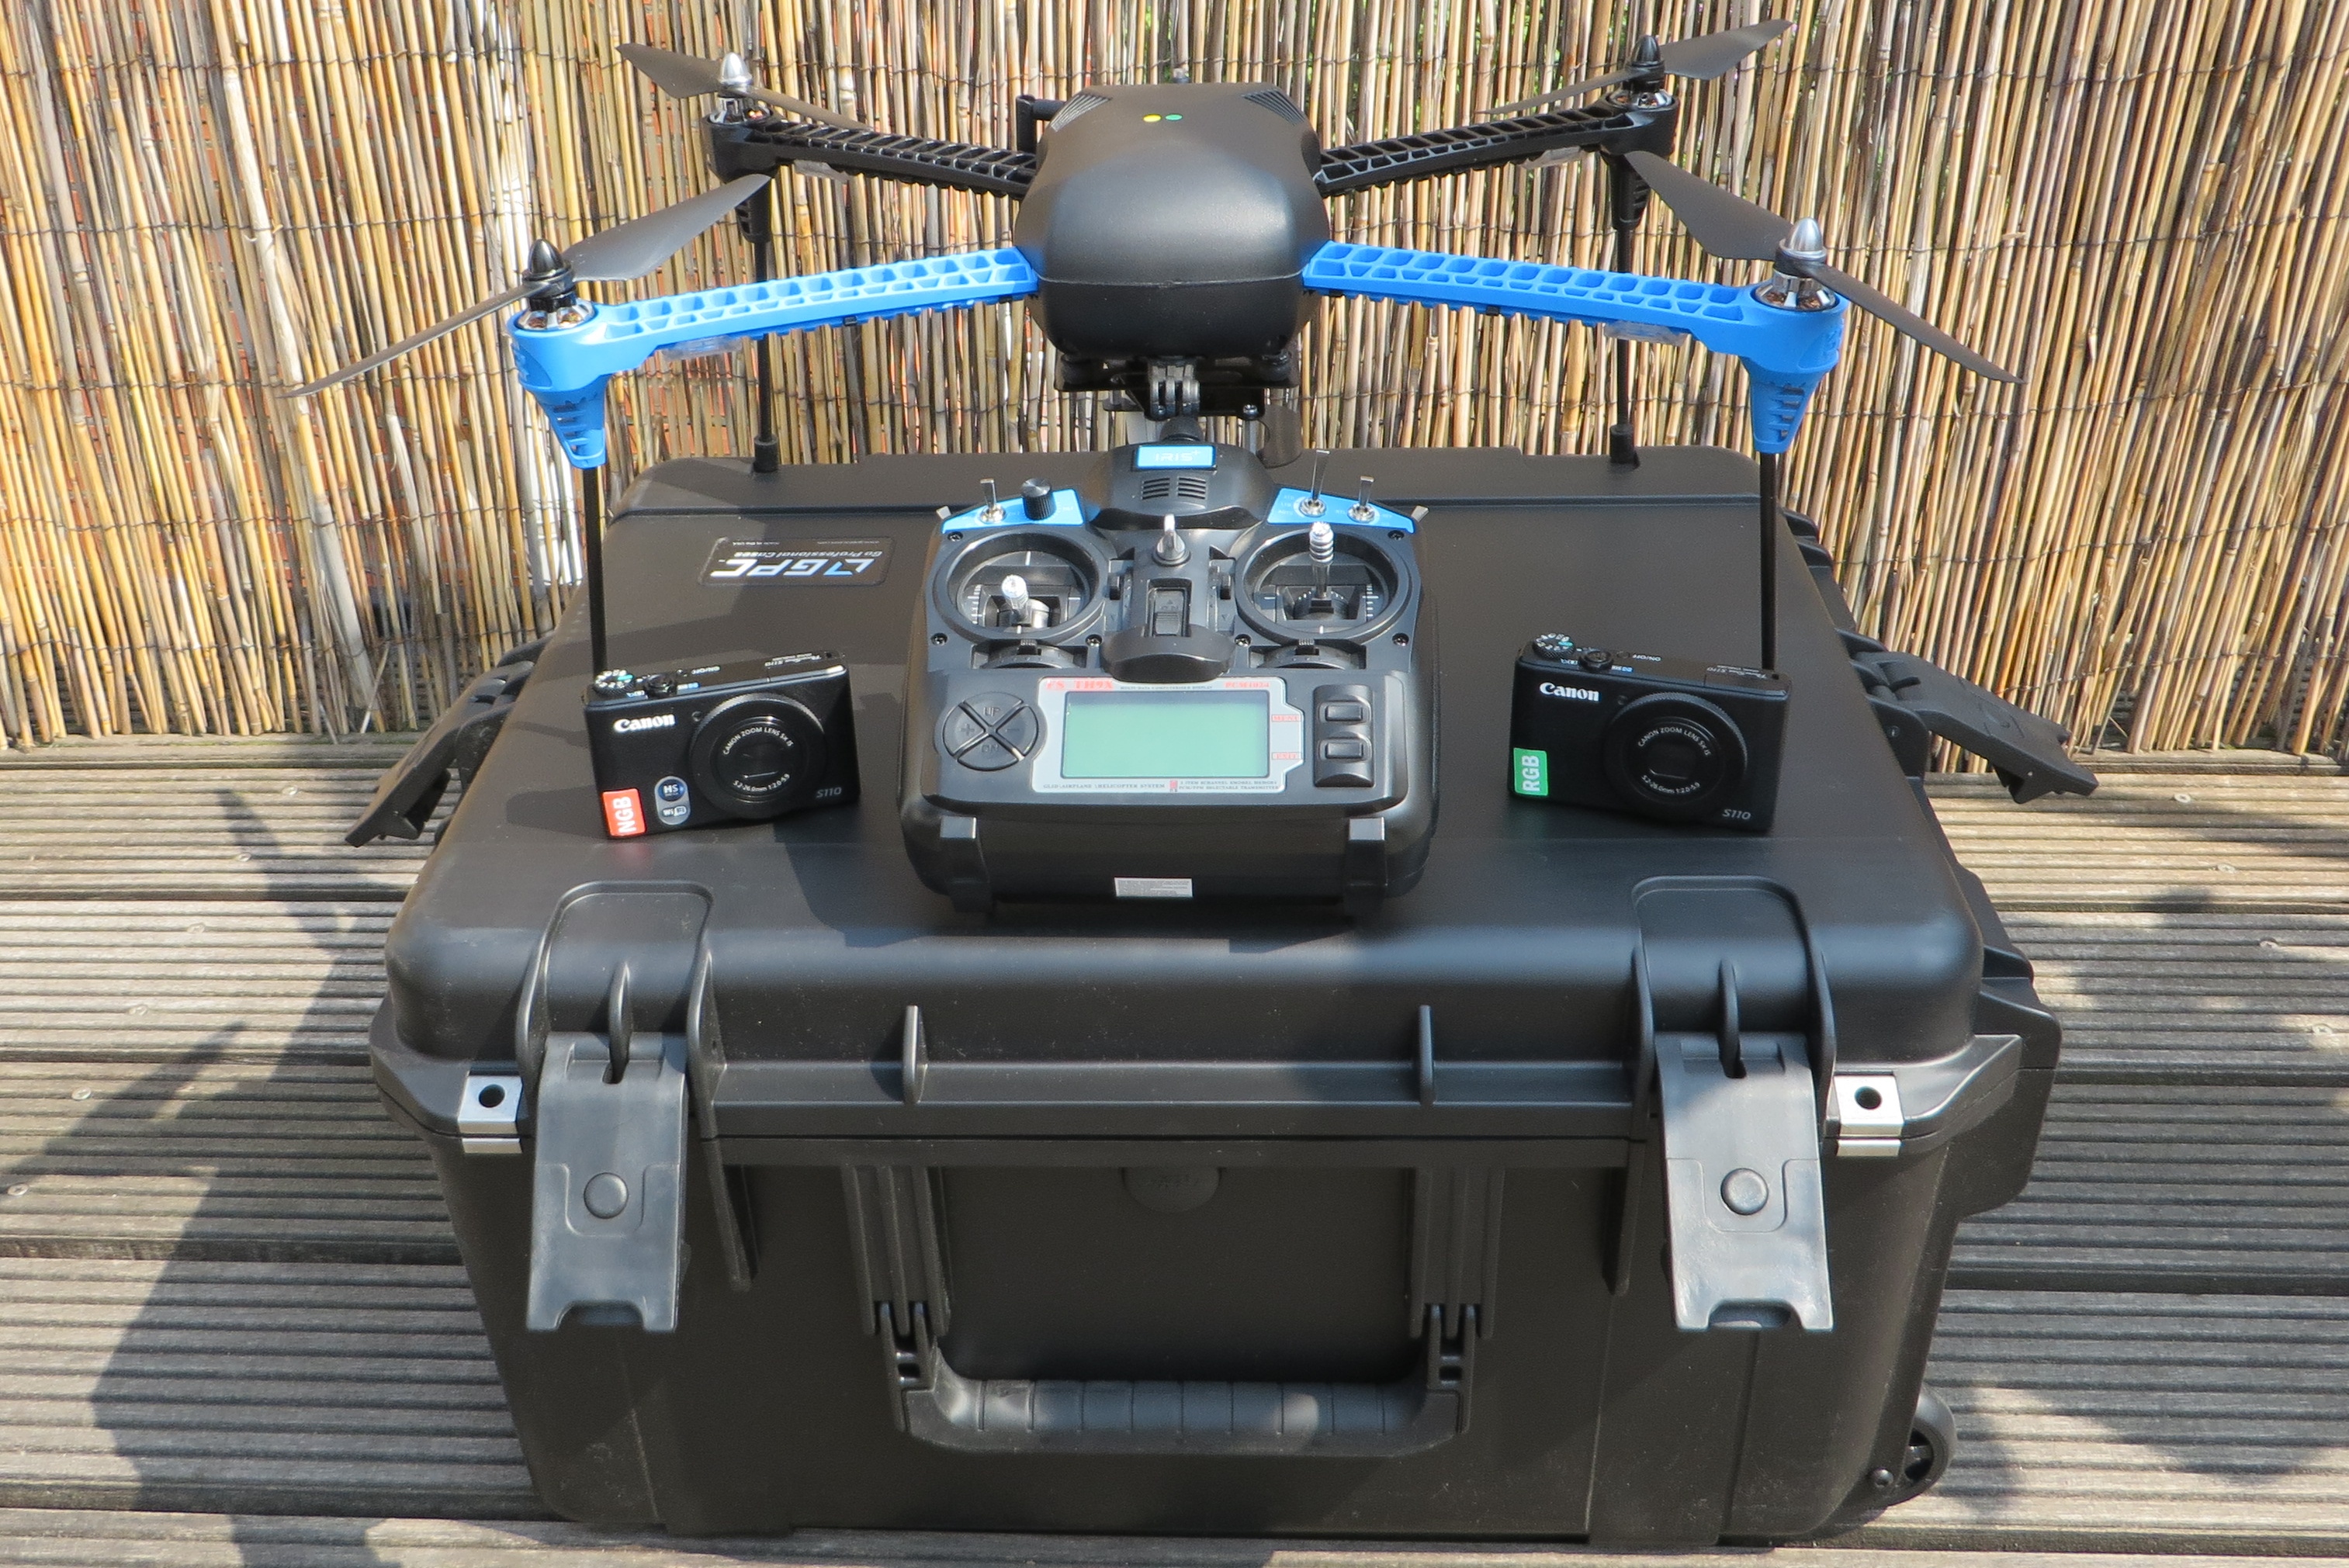 Promoten ondergeschikt band Een drone kopen? - Professionele drone kopen | DJI Enterprise Dealer